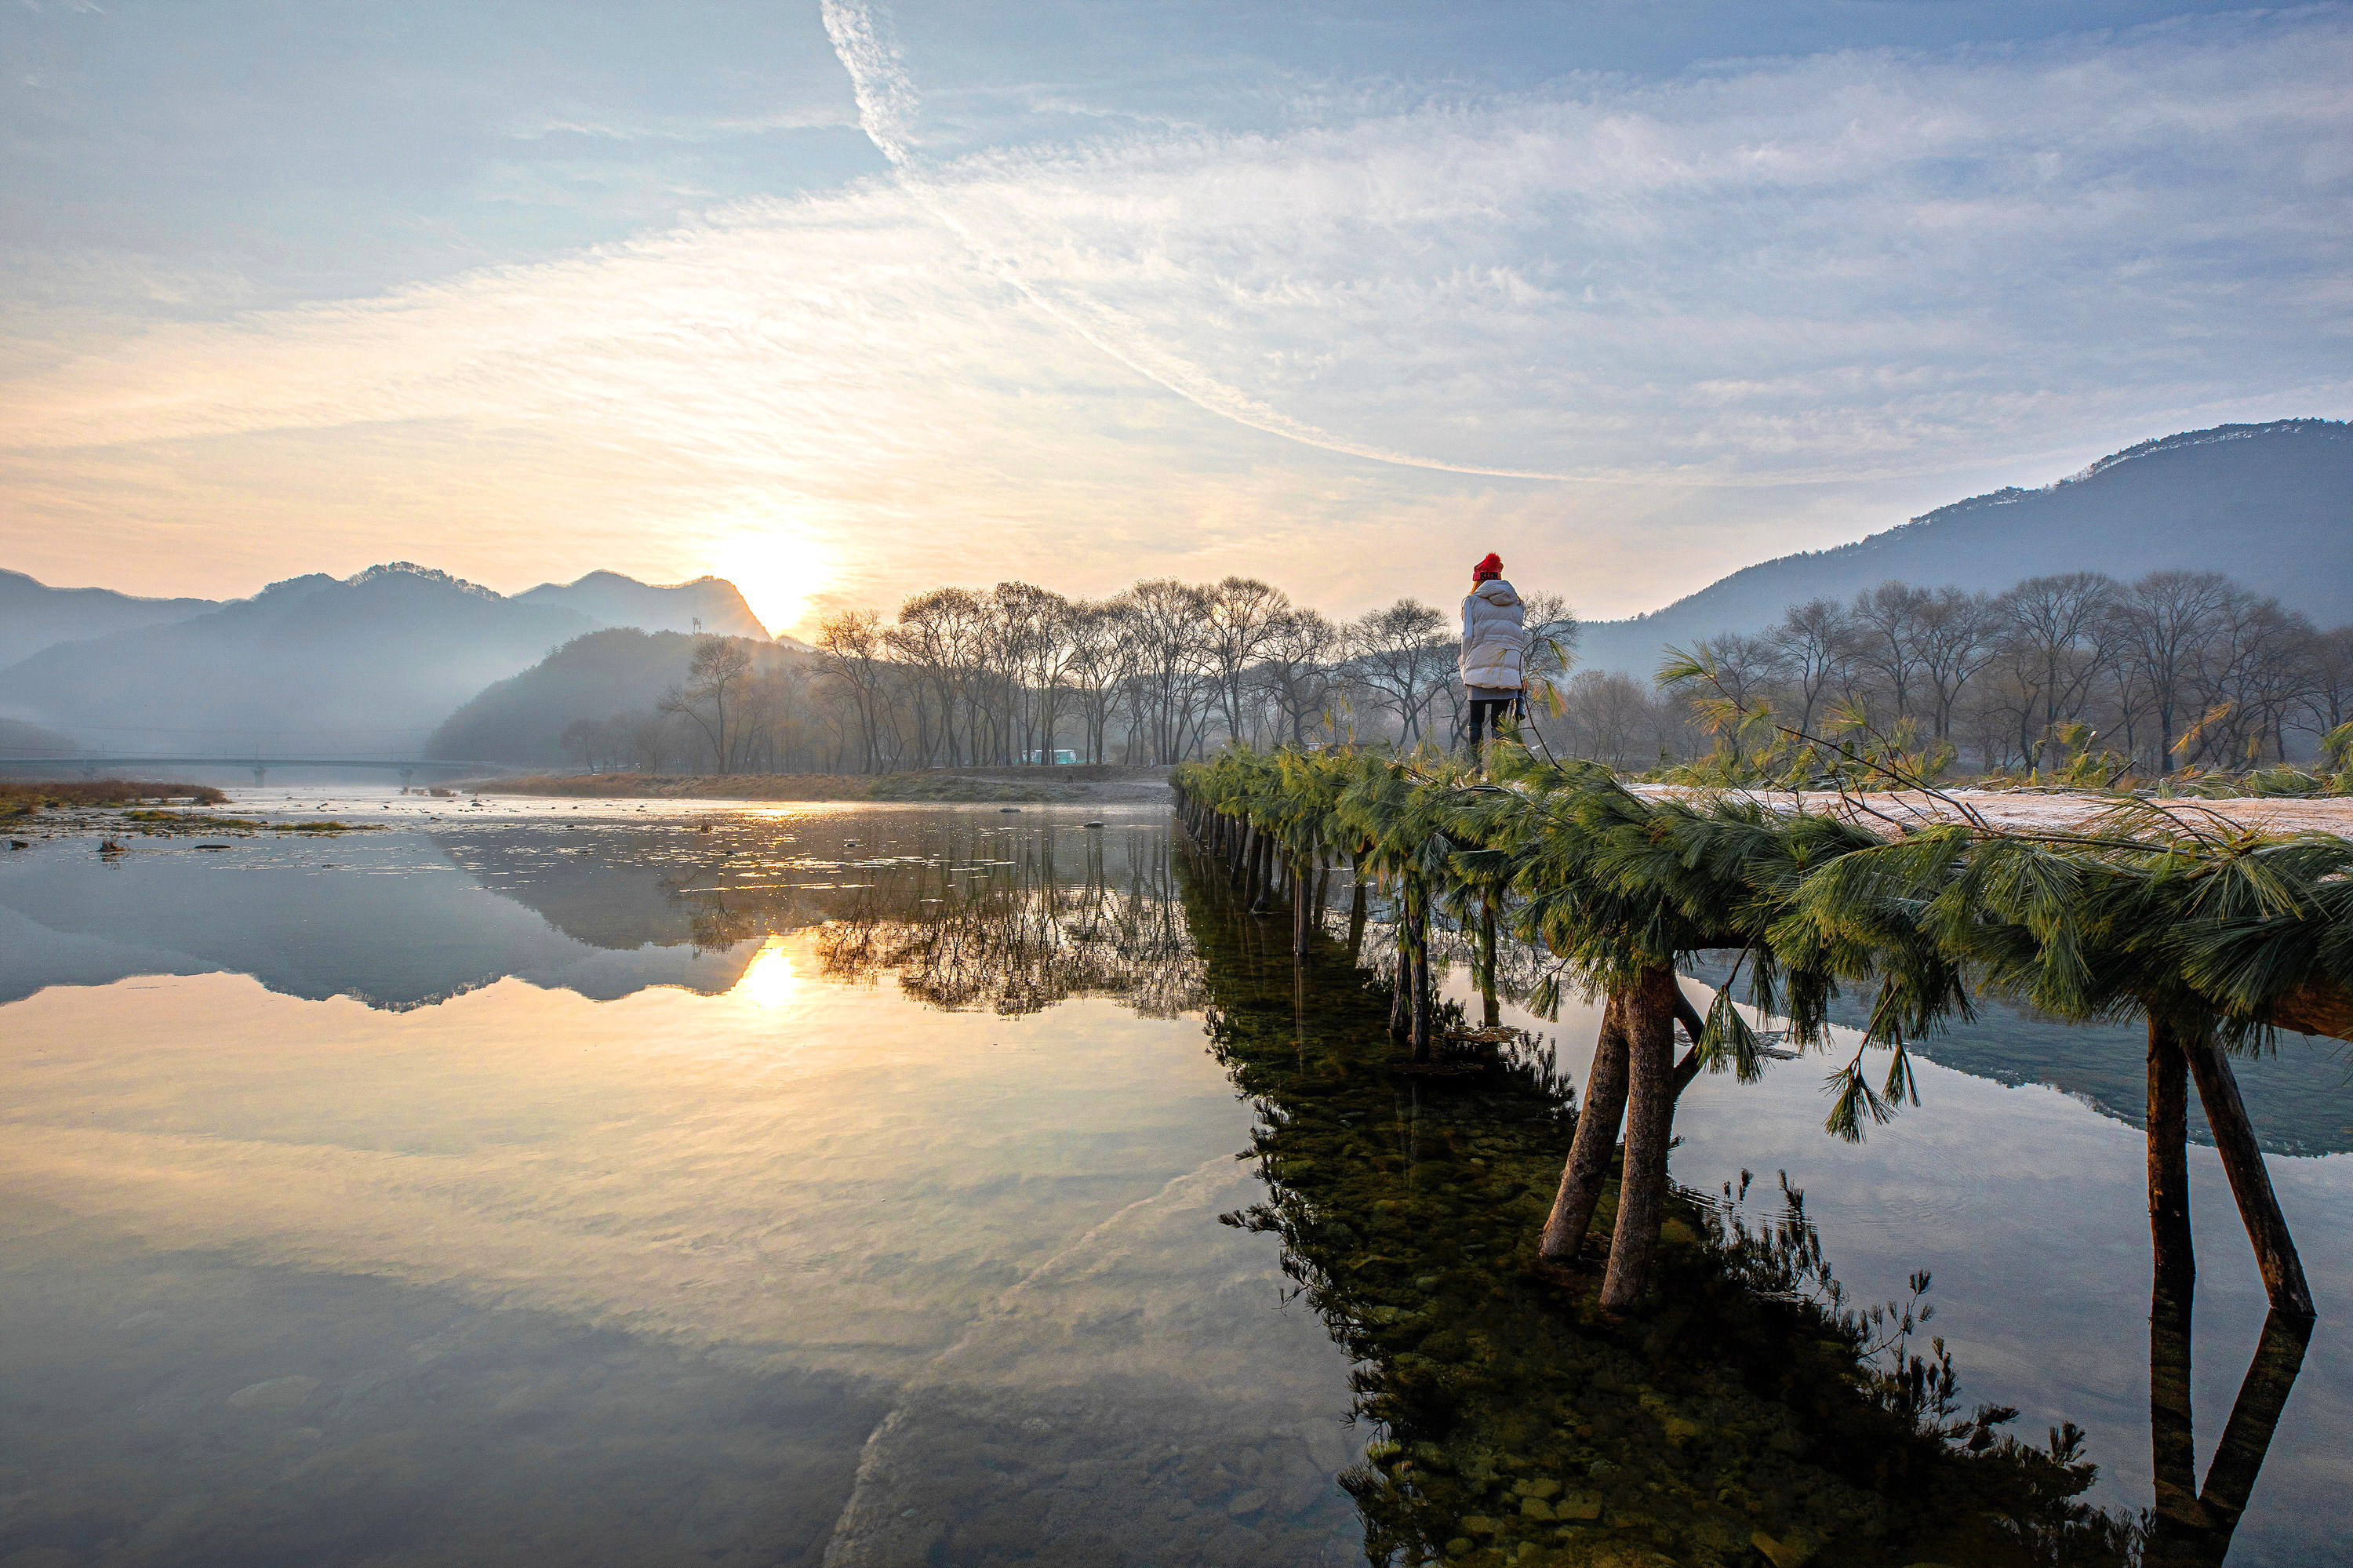 제18회 아름다운 한강 사진 공모전 수상작 (일반부 우수상 : 평창강 섶다리의 가을 아침) 큰이미지